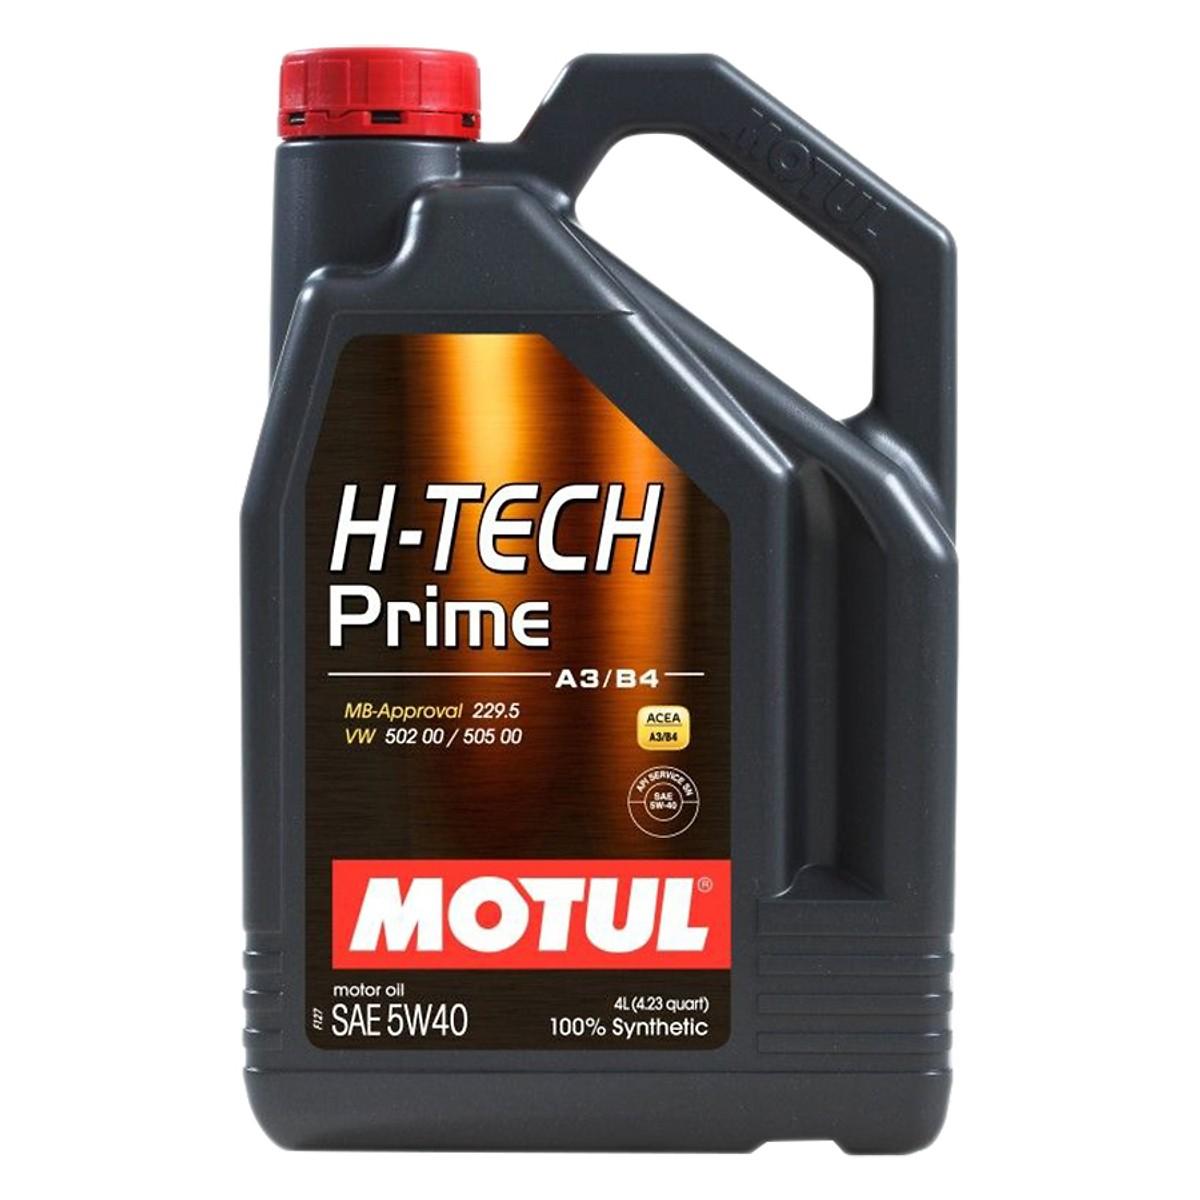 Motul H-Tech Prime 5W40 4L - Nhớt tổng hợp 100% dùng cho xe Ô tô